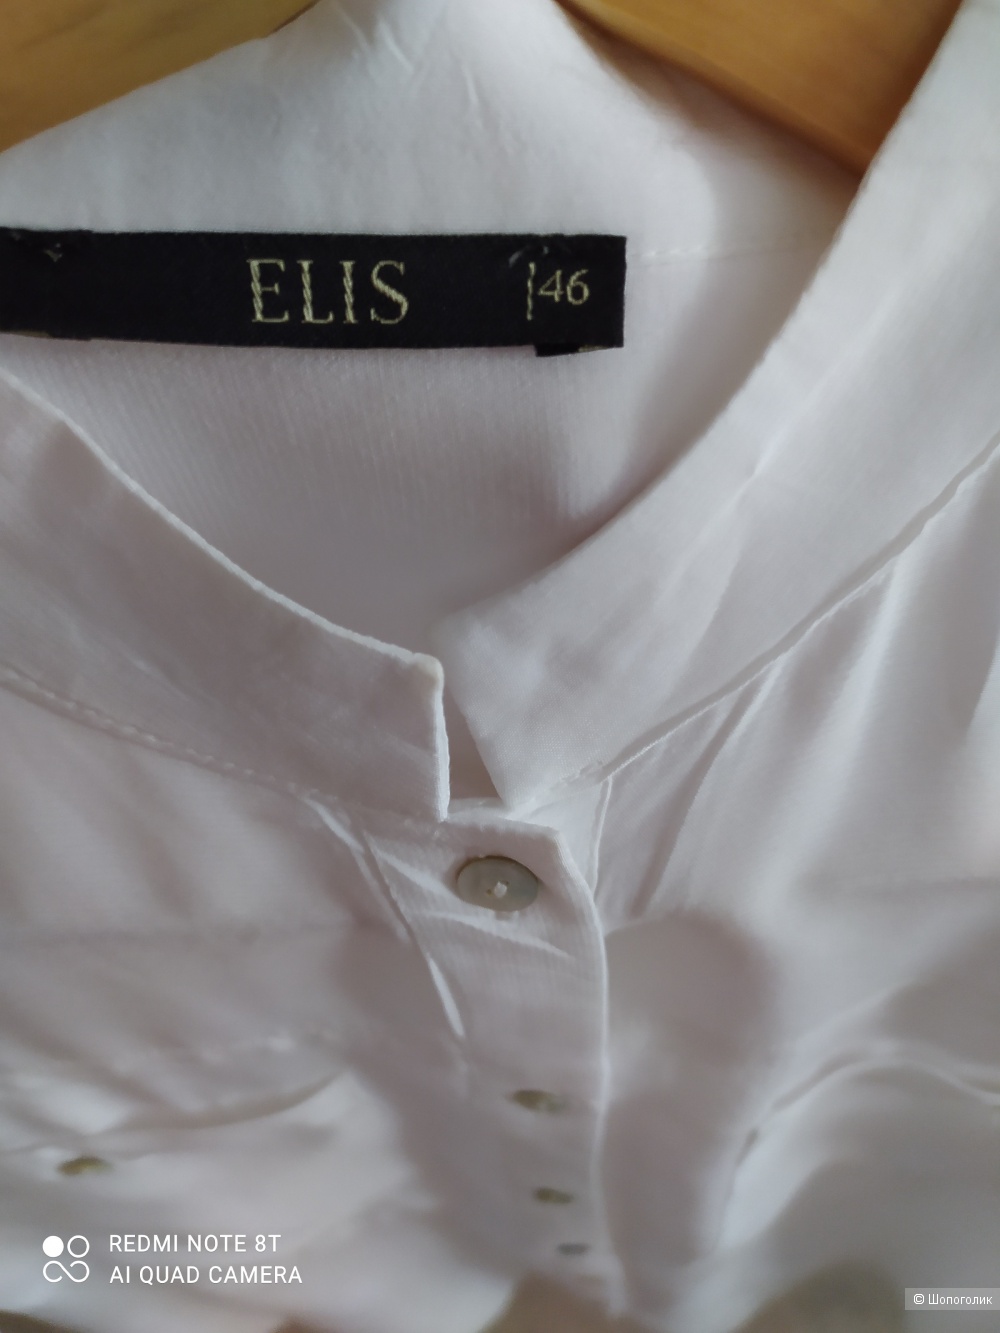 Рубашка ElIS р-р 46 (российский)